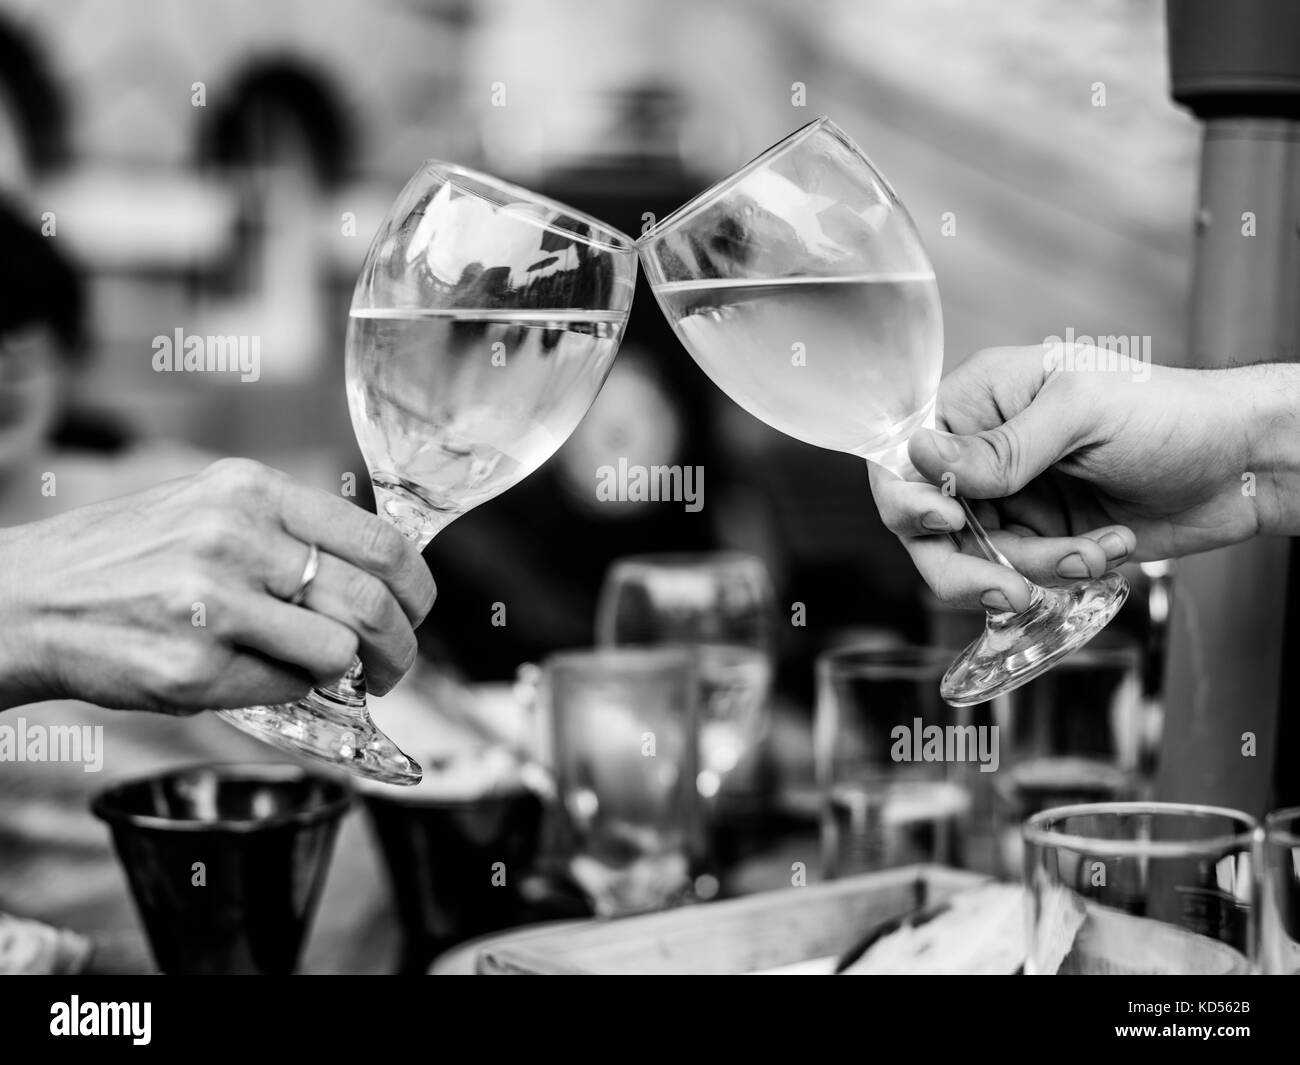 L'image monochrome noir et blanc de célébrer le succès avec deux verres de vin blanc posée sur une table dans un établissement à l'extérieur ou ourdoors Banque D'Images